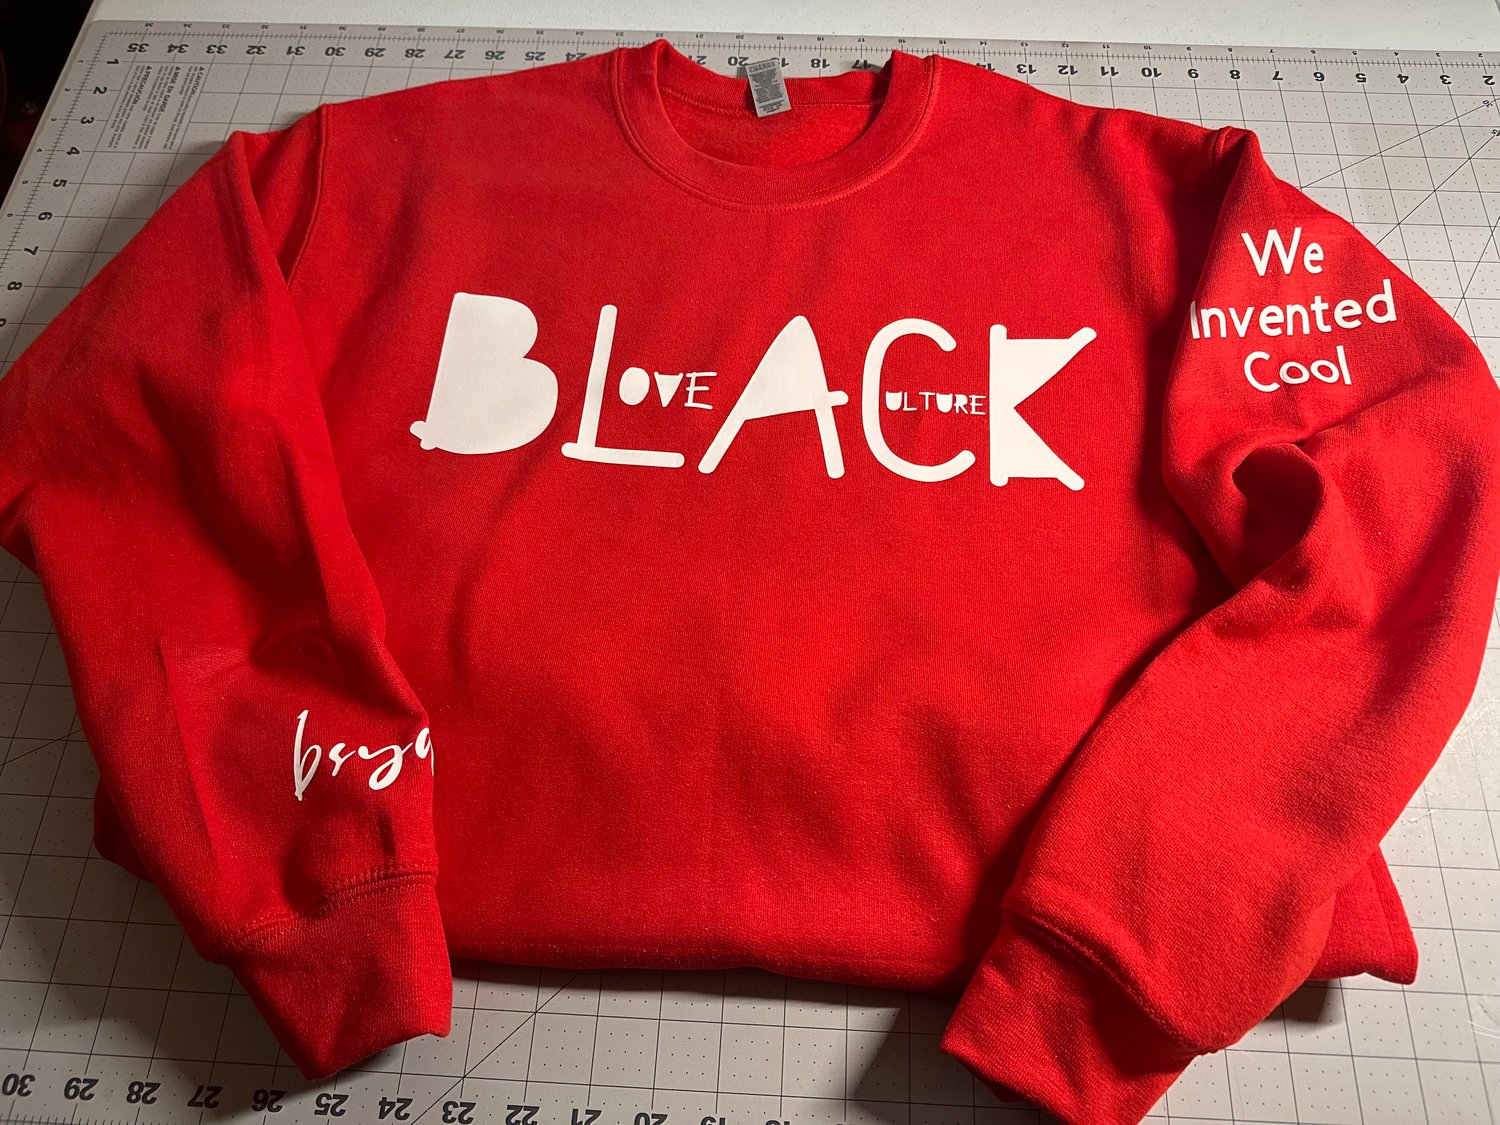 Love Black Culture (Red)